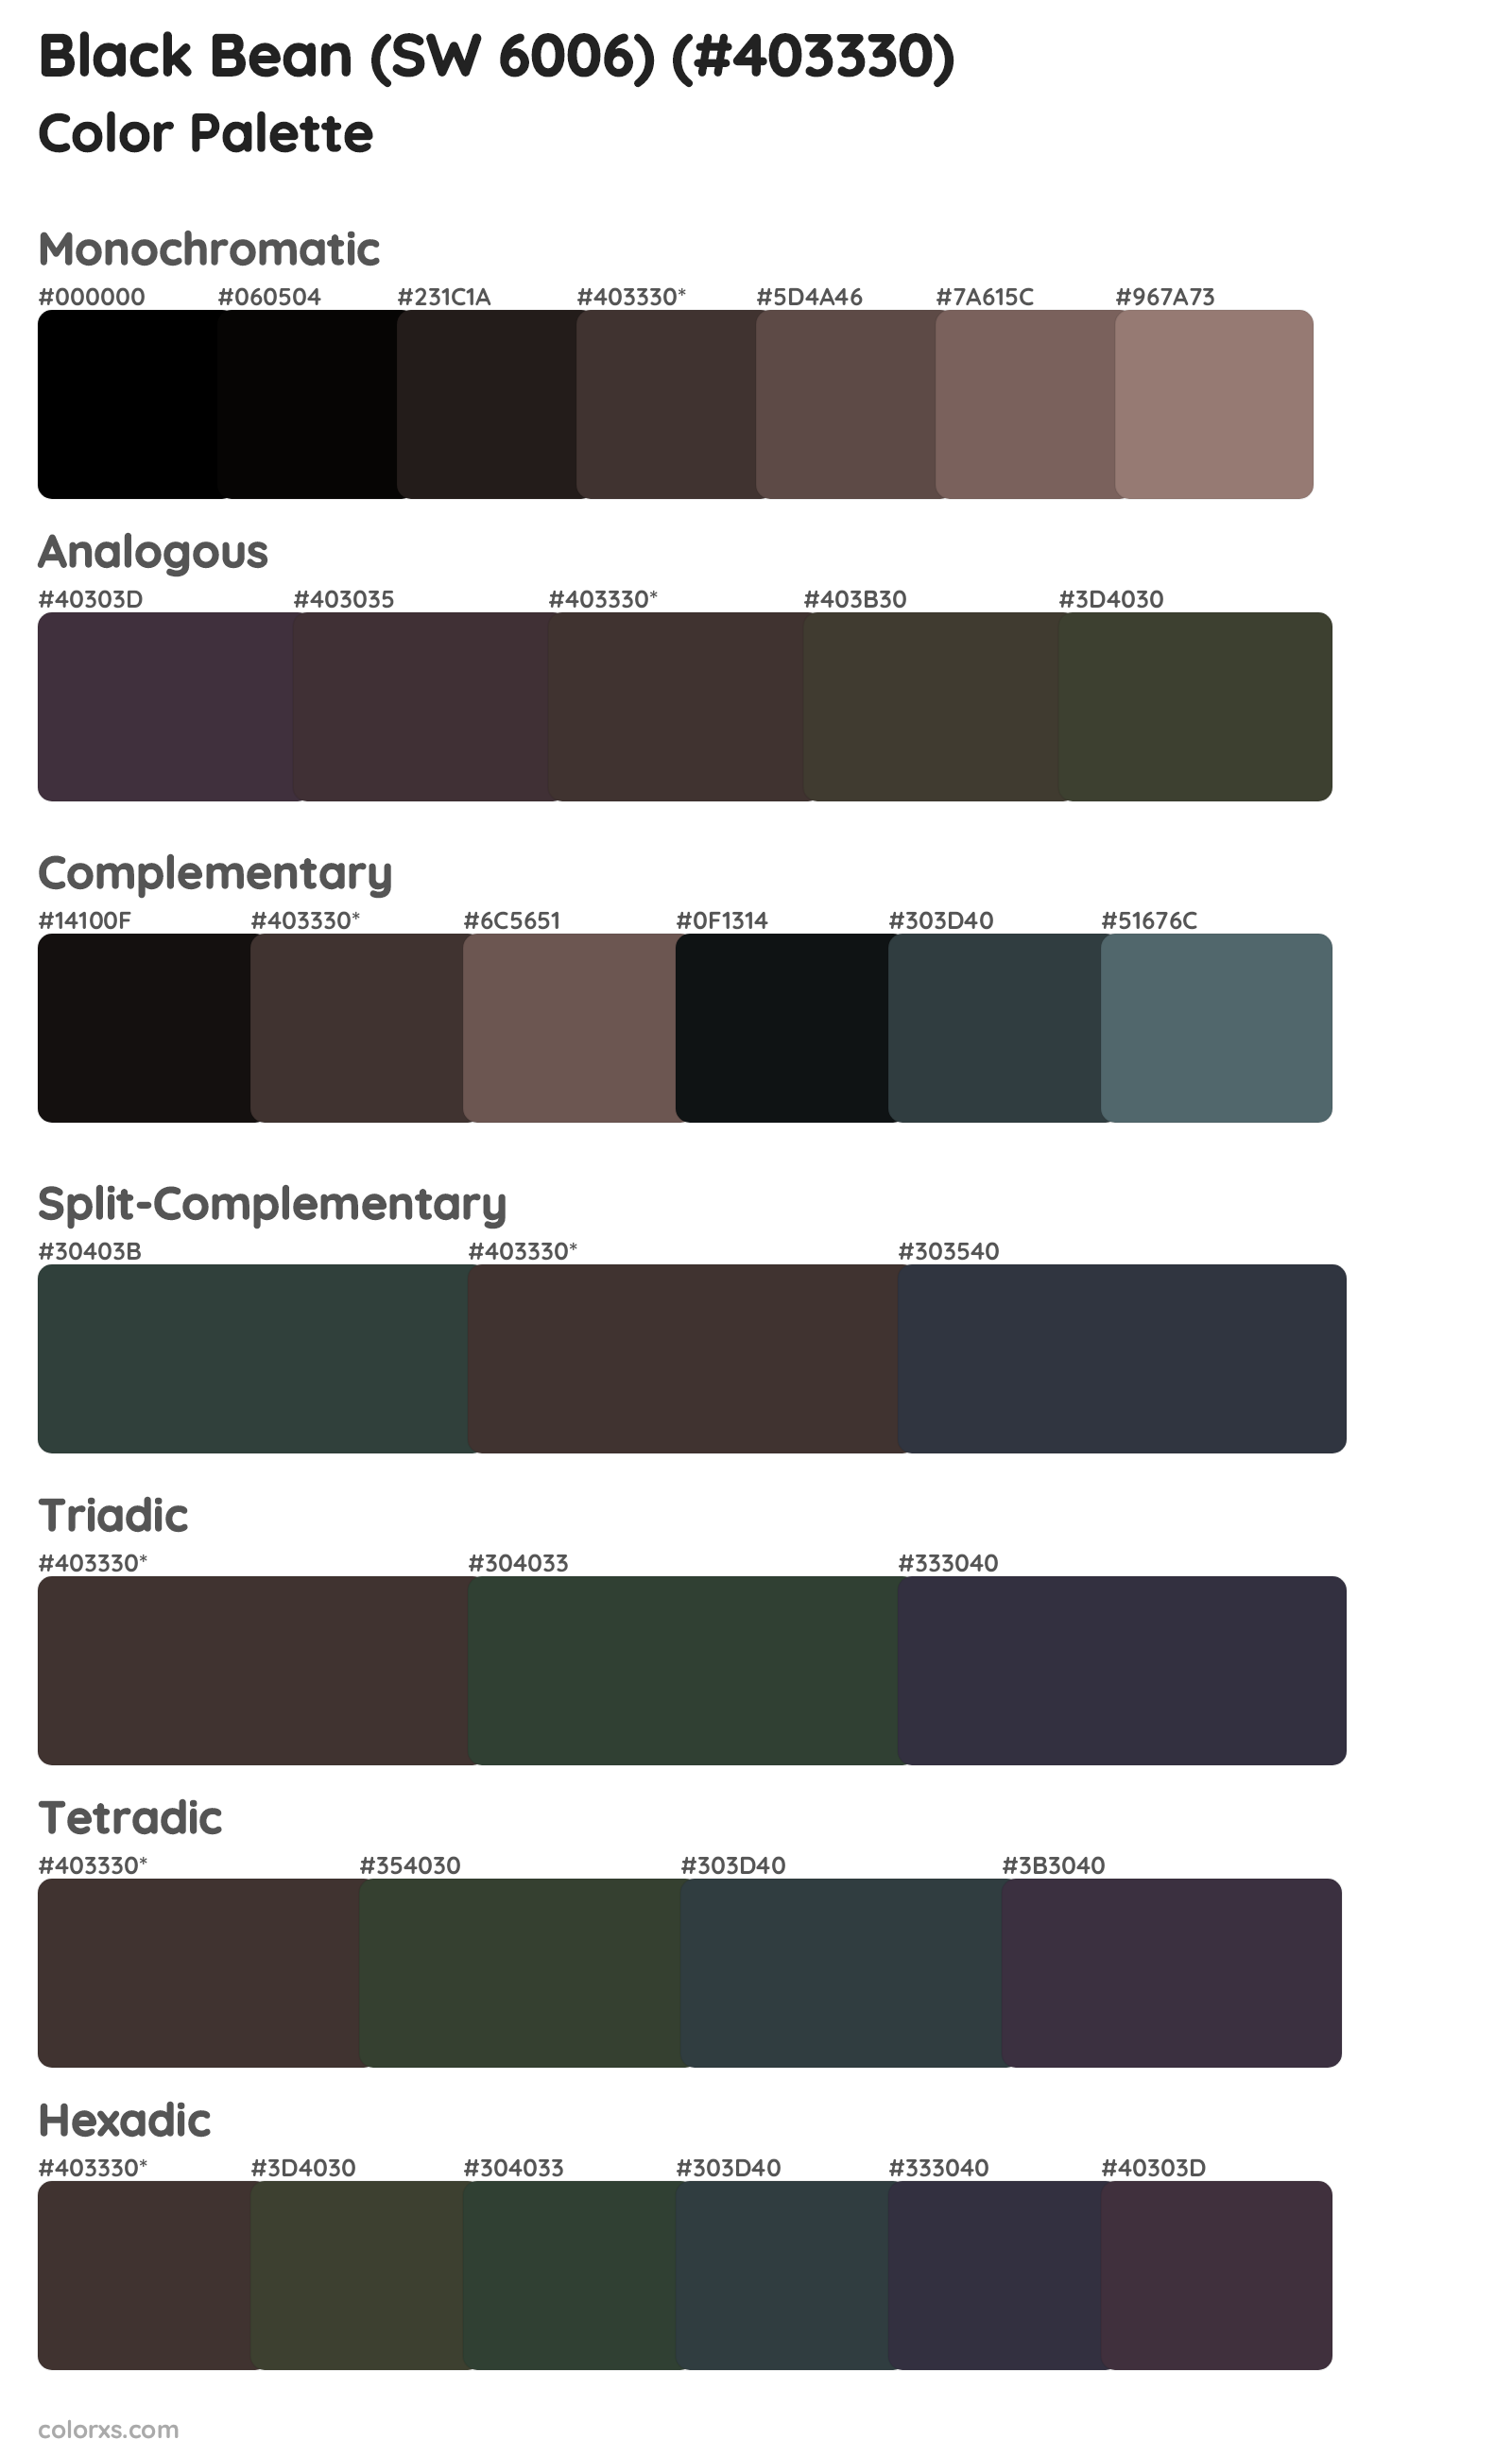 Black Bean (SW 6006) Color Scheme Palettes